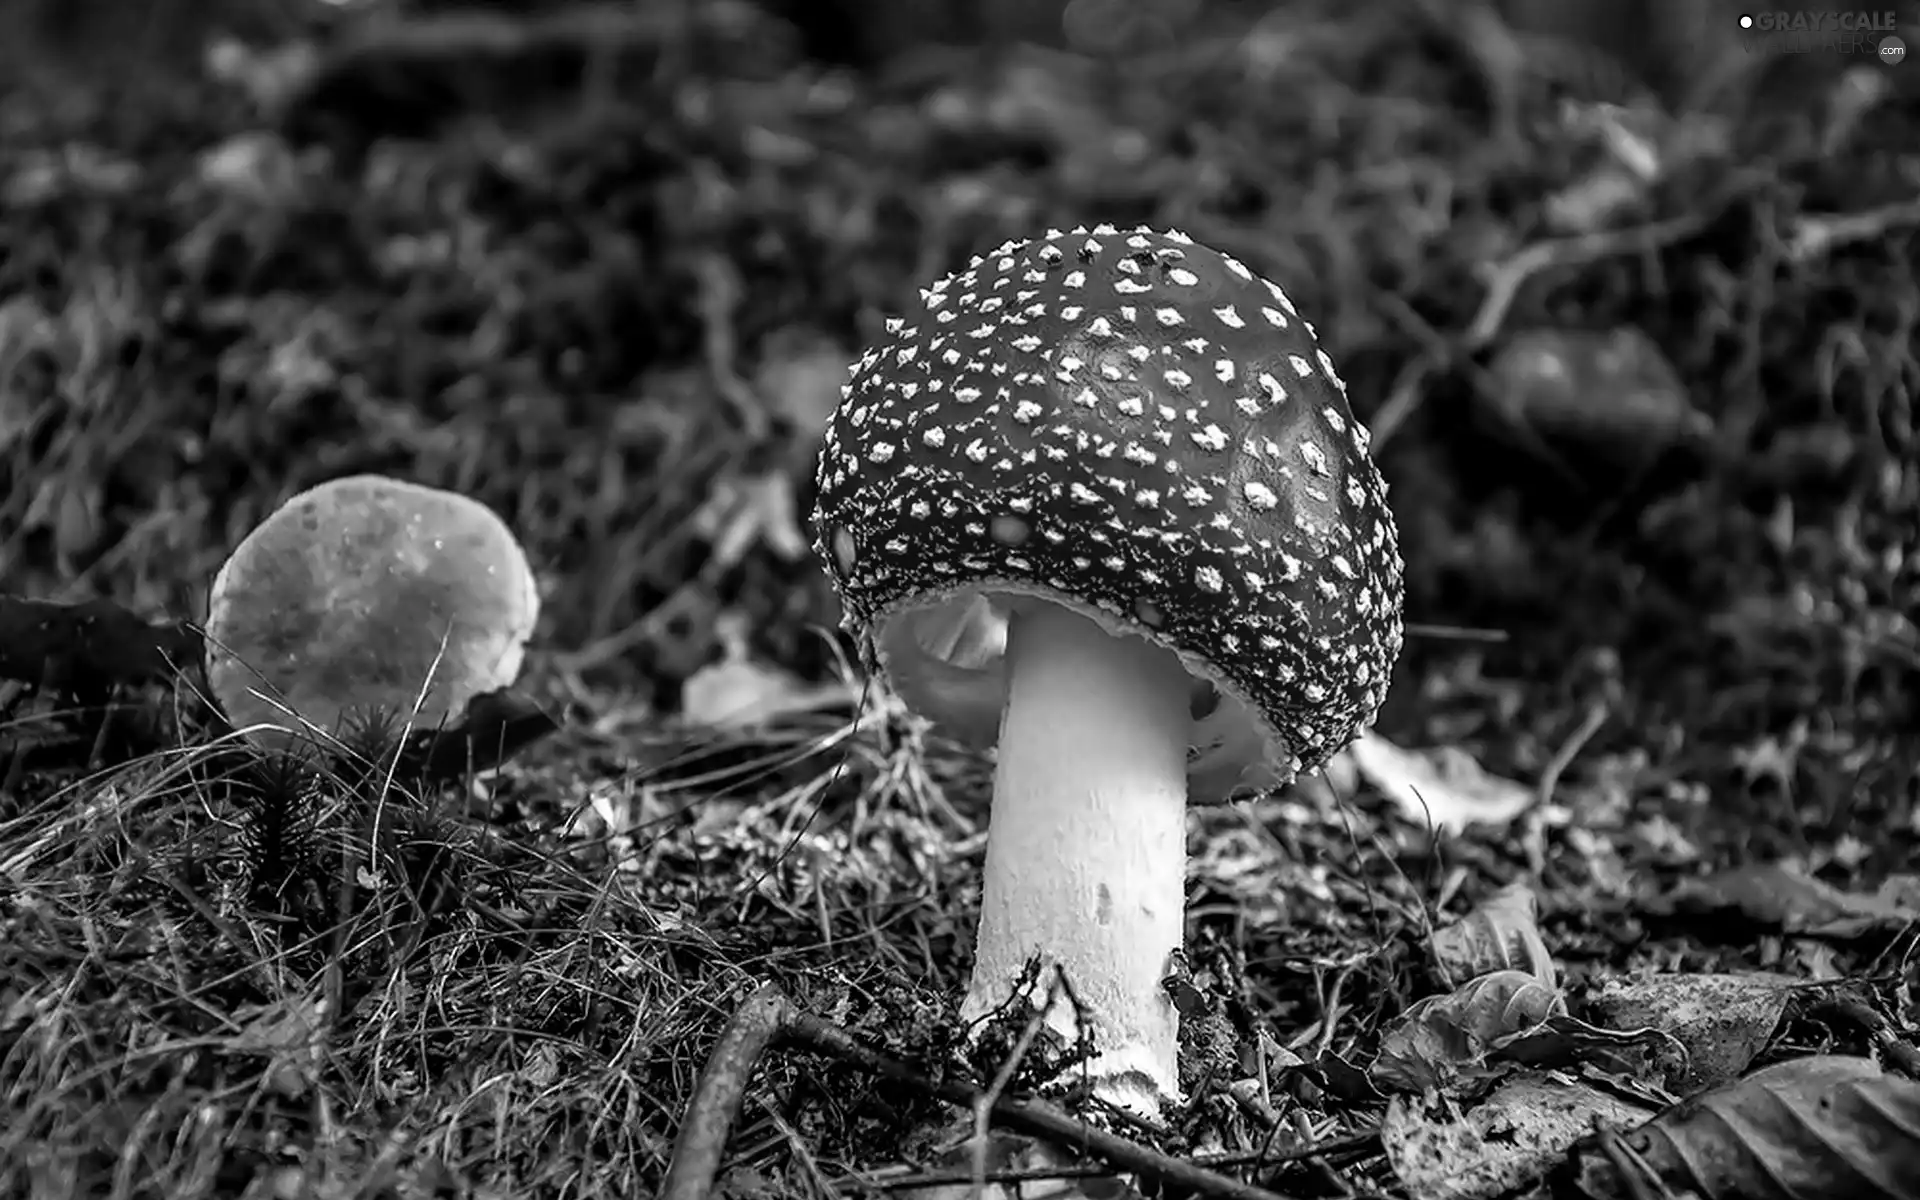 Mushrooms, toadstool